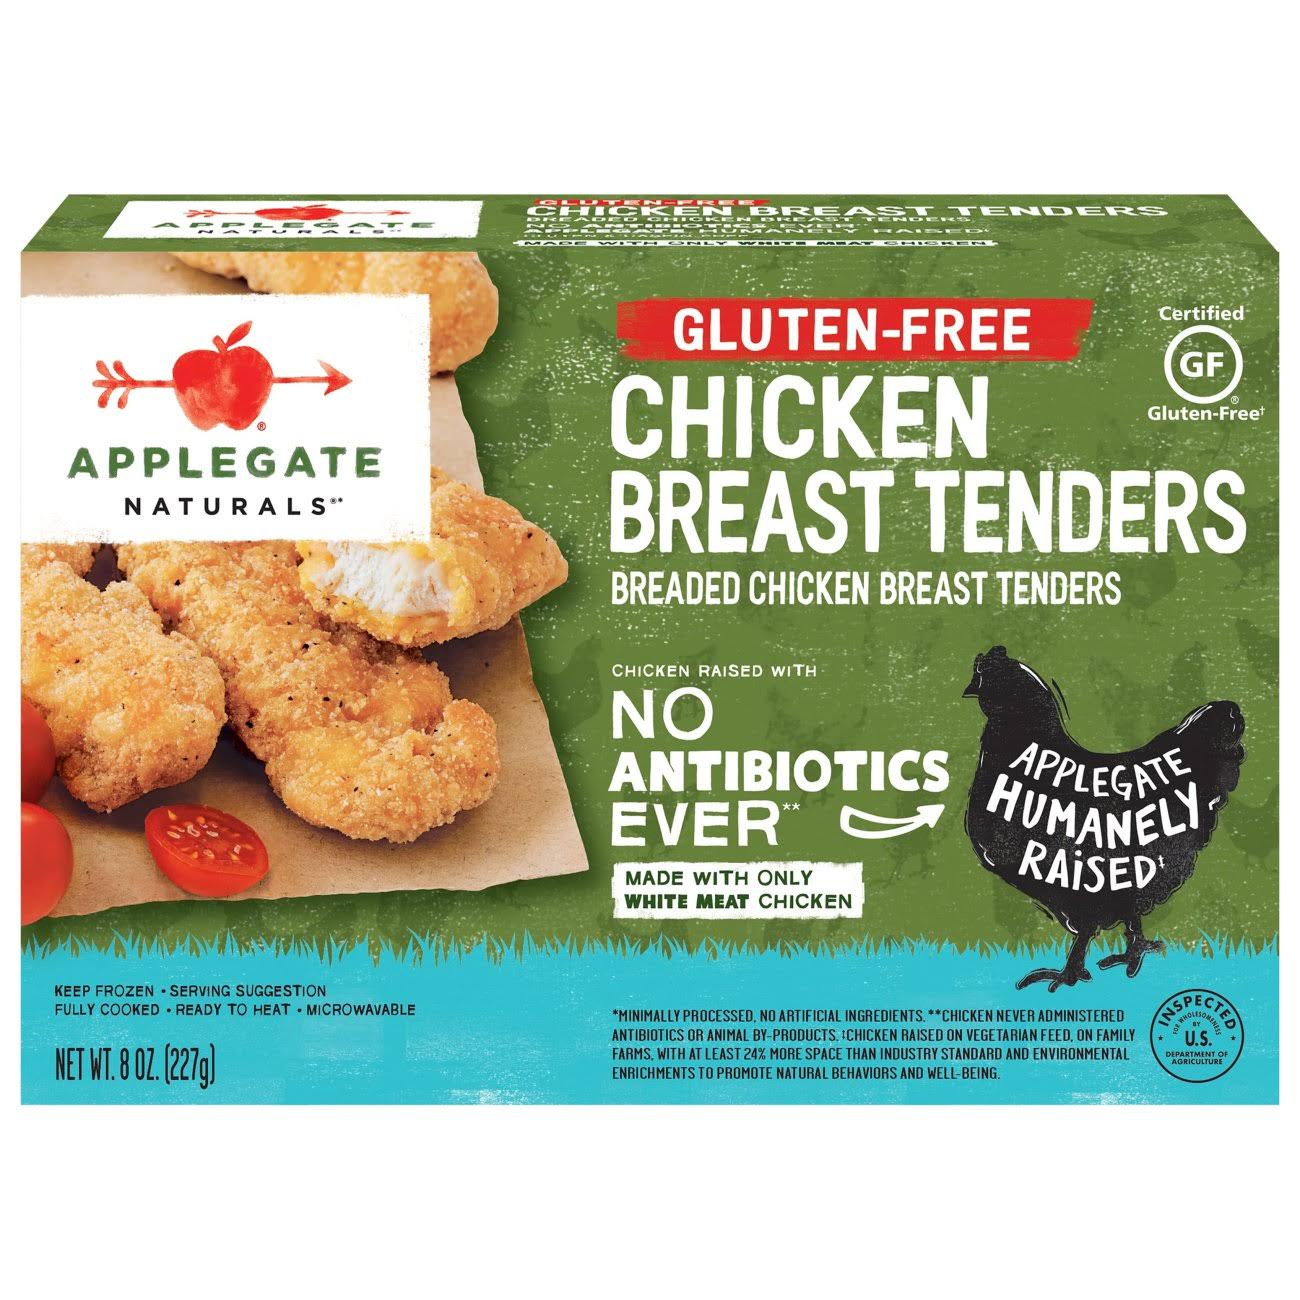 Applegate Naturals Gluten-Free Chicken Breast Tenders